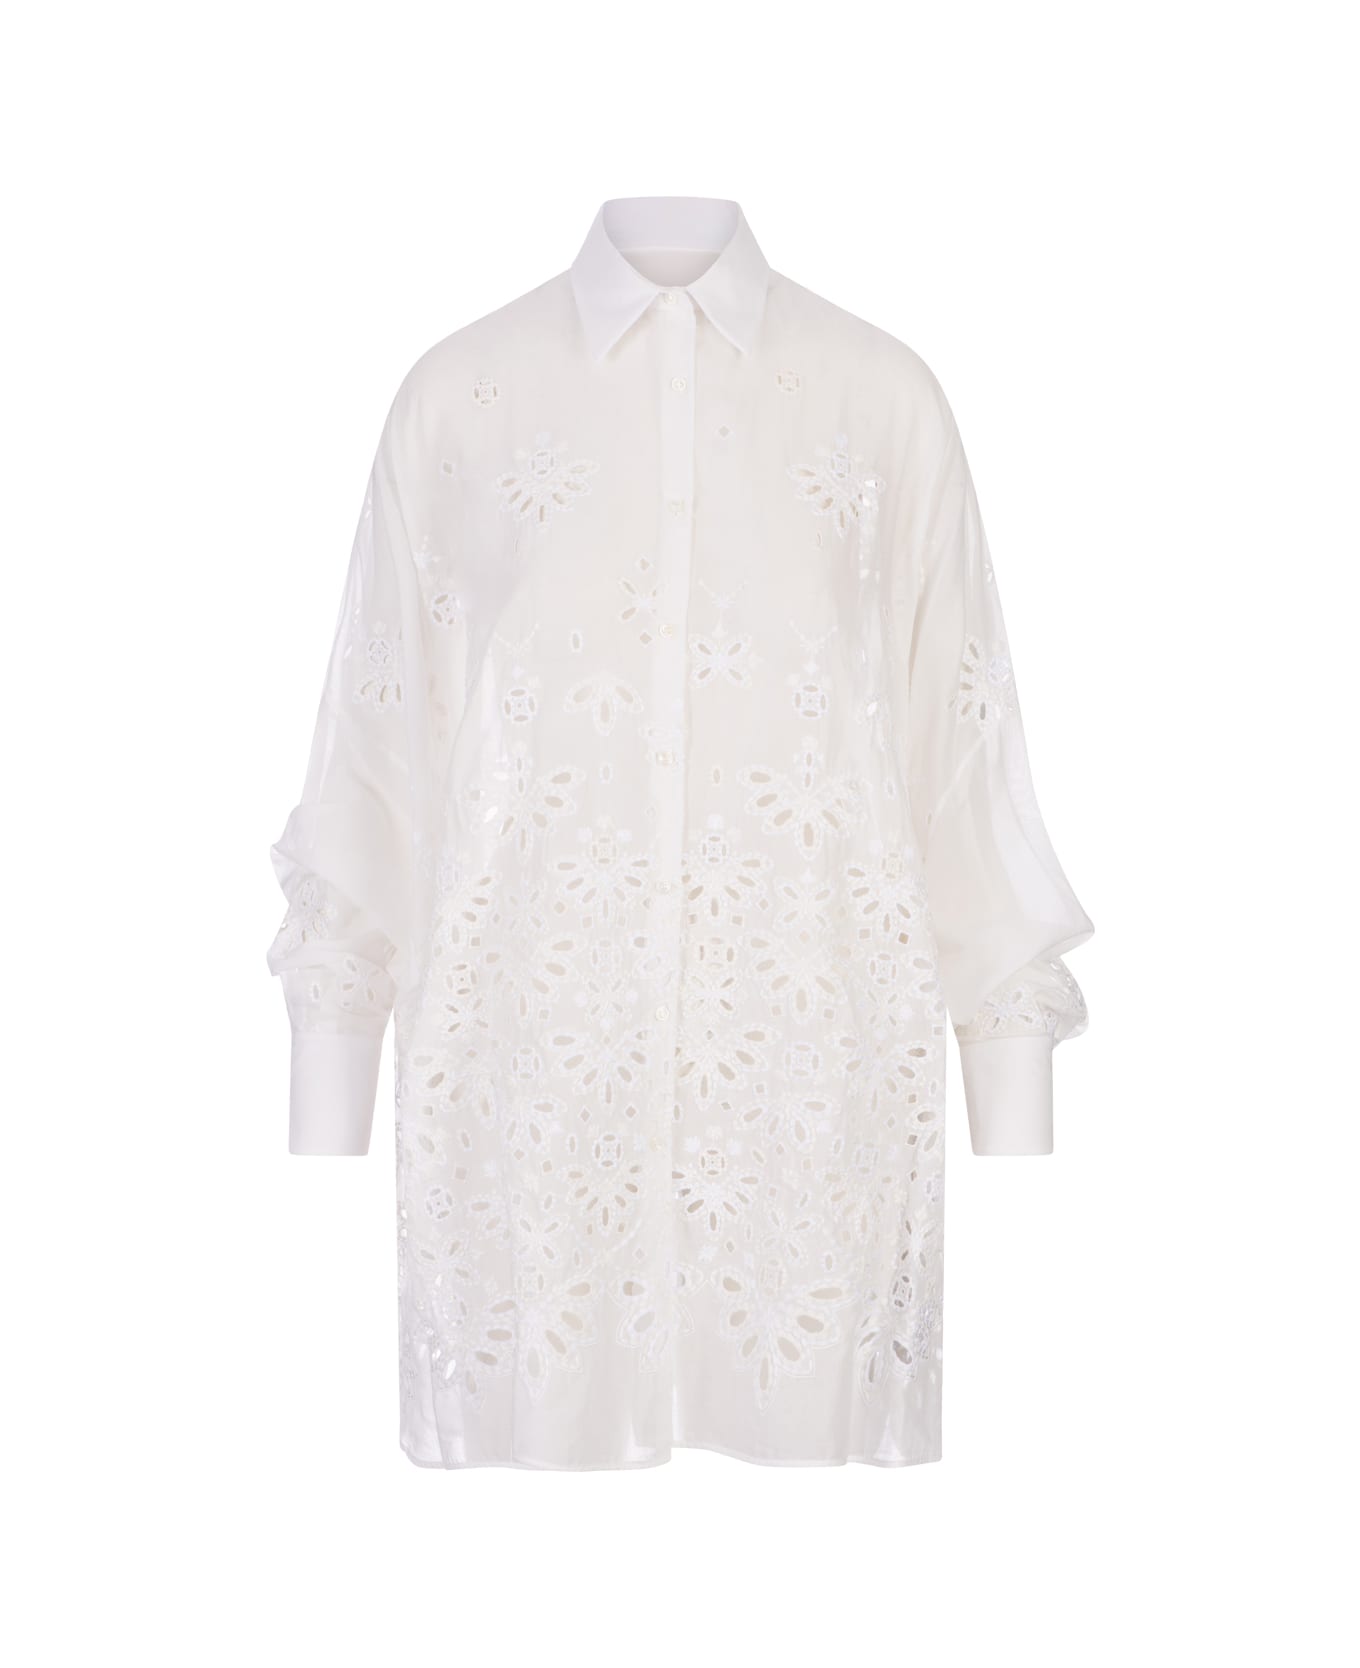 Ermanno Scervino White Over Shirt With Sangallo Lace - White